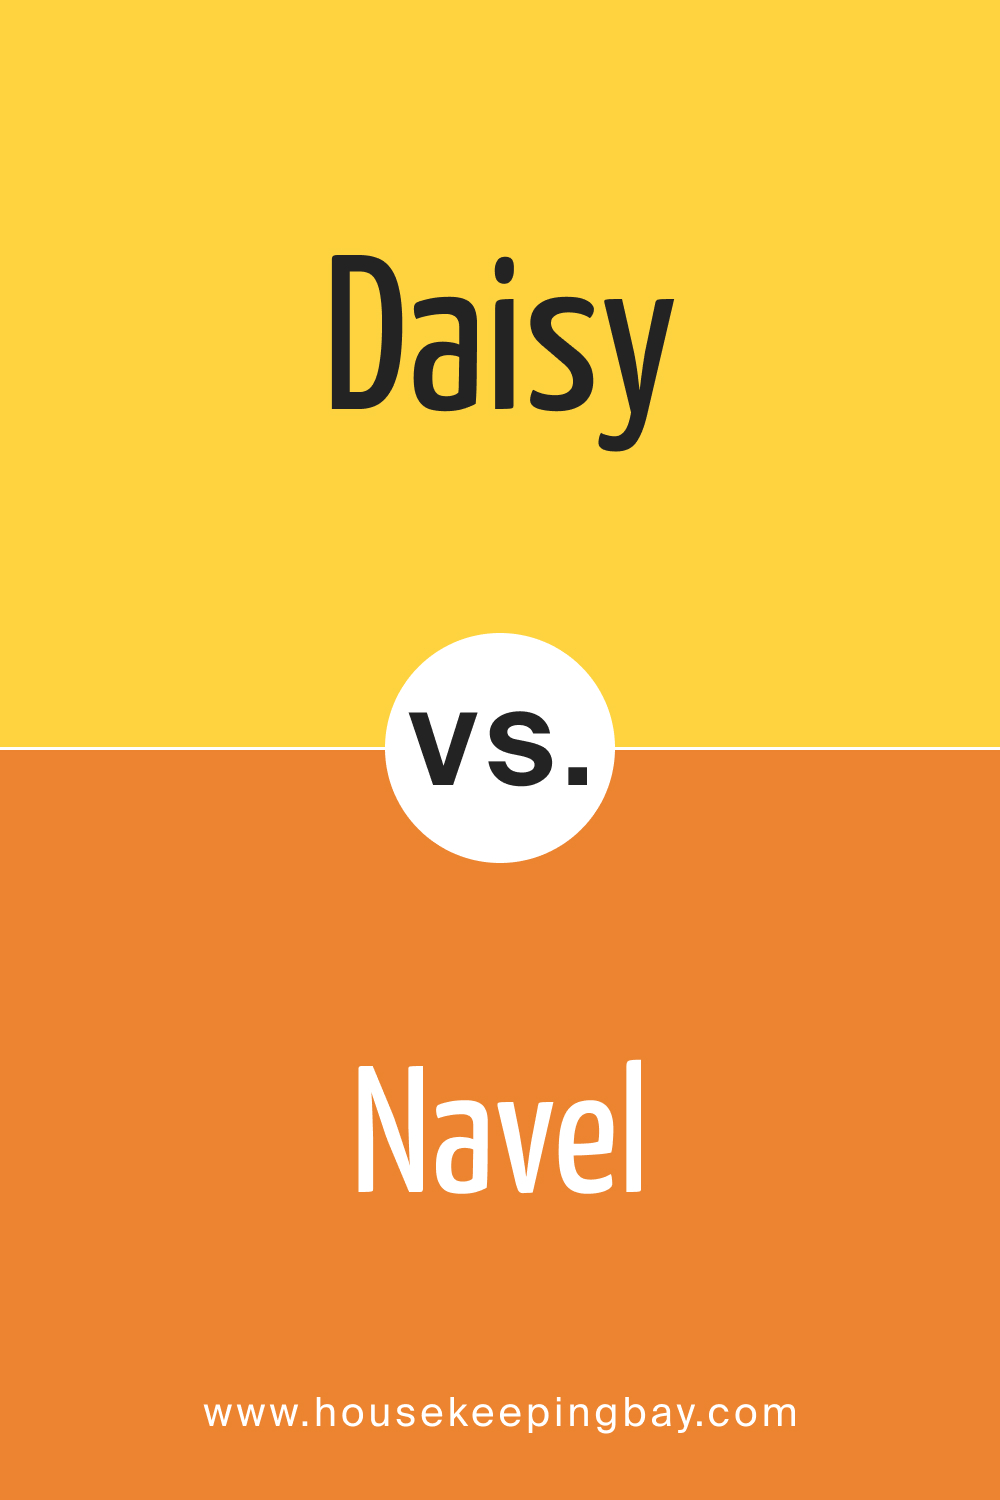 Daisy SW 6910 vs SW 6887 Navel